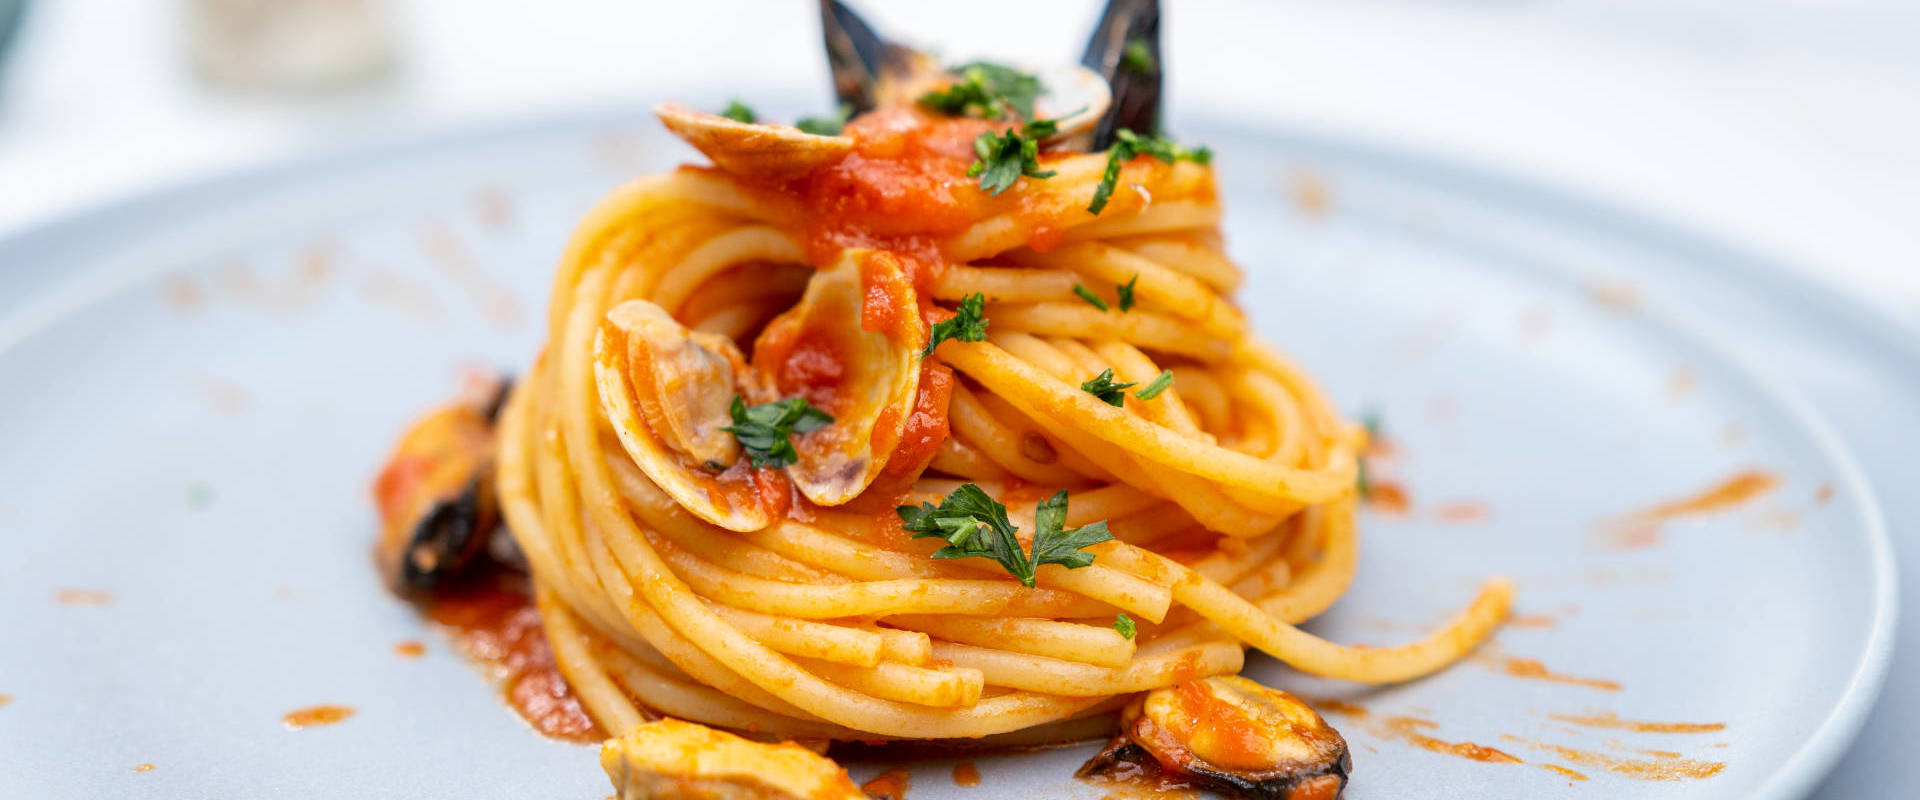 slide_spaghetti_sugo_cozze_vongole_polenta_conero_food